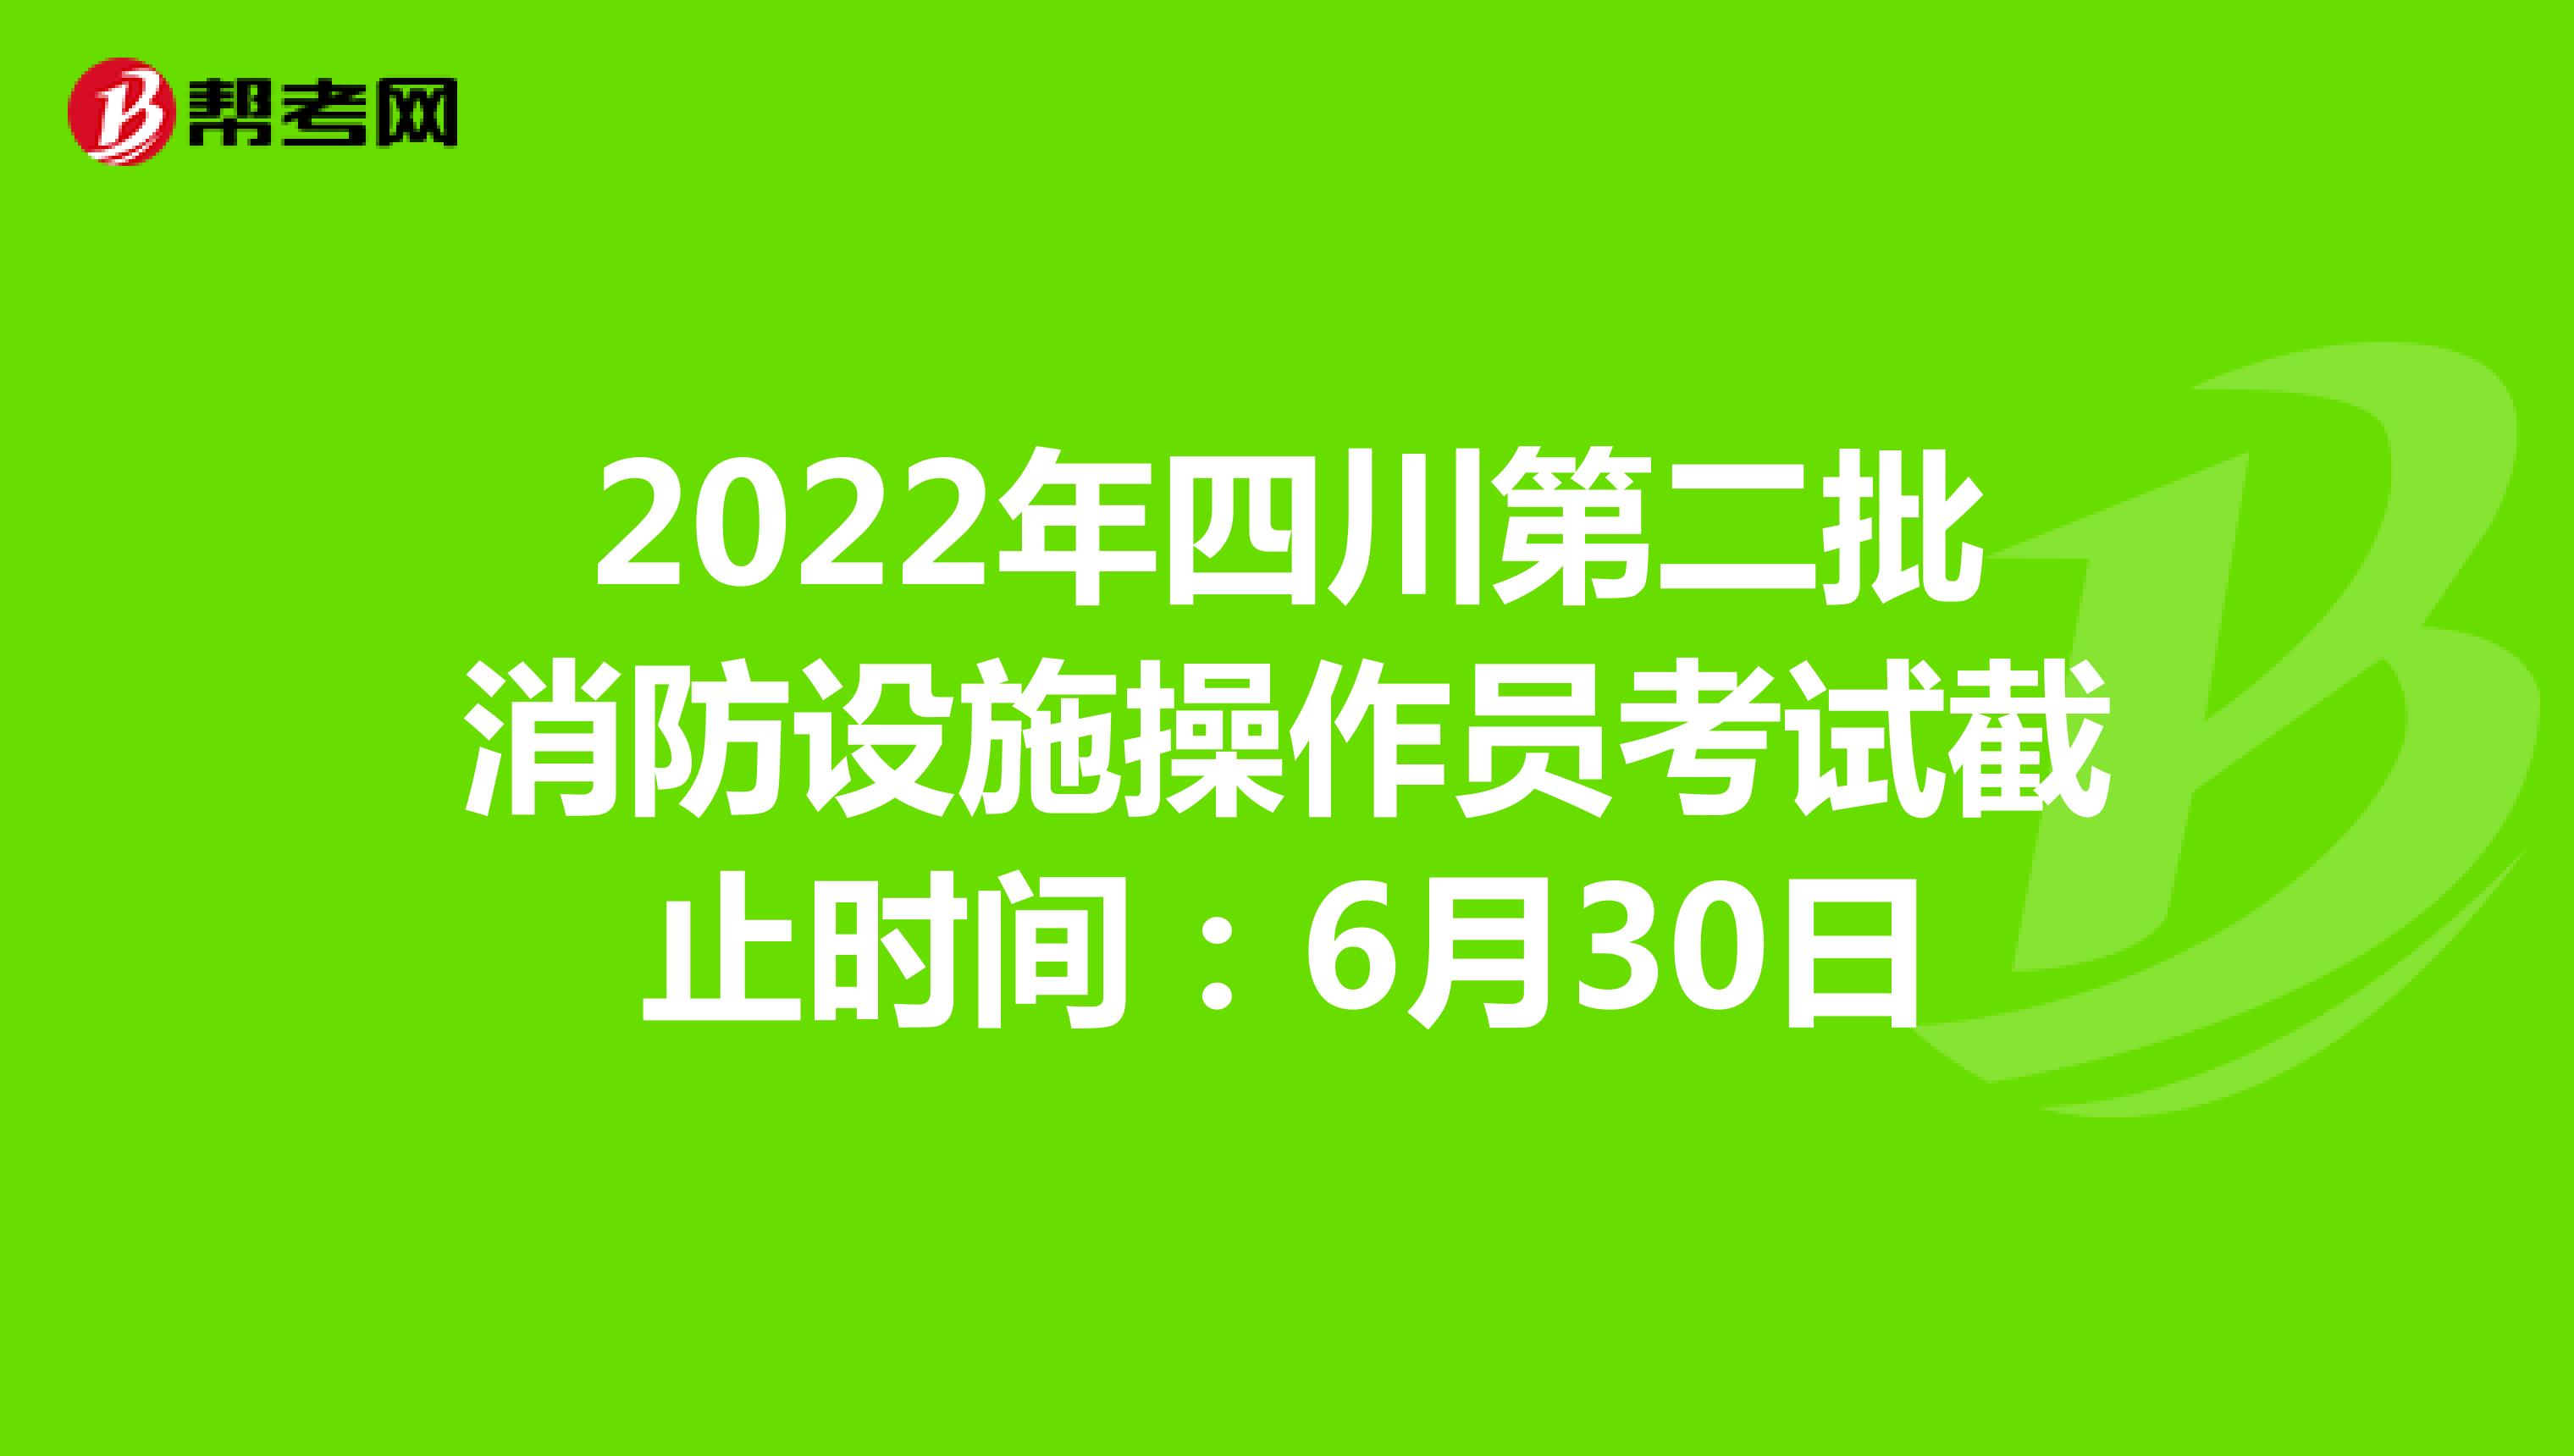 2022年四川第二批消防设施操作员考试截止时间：6月30日